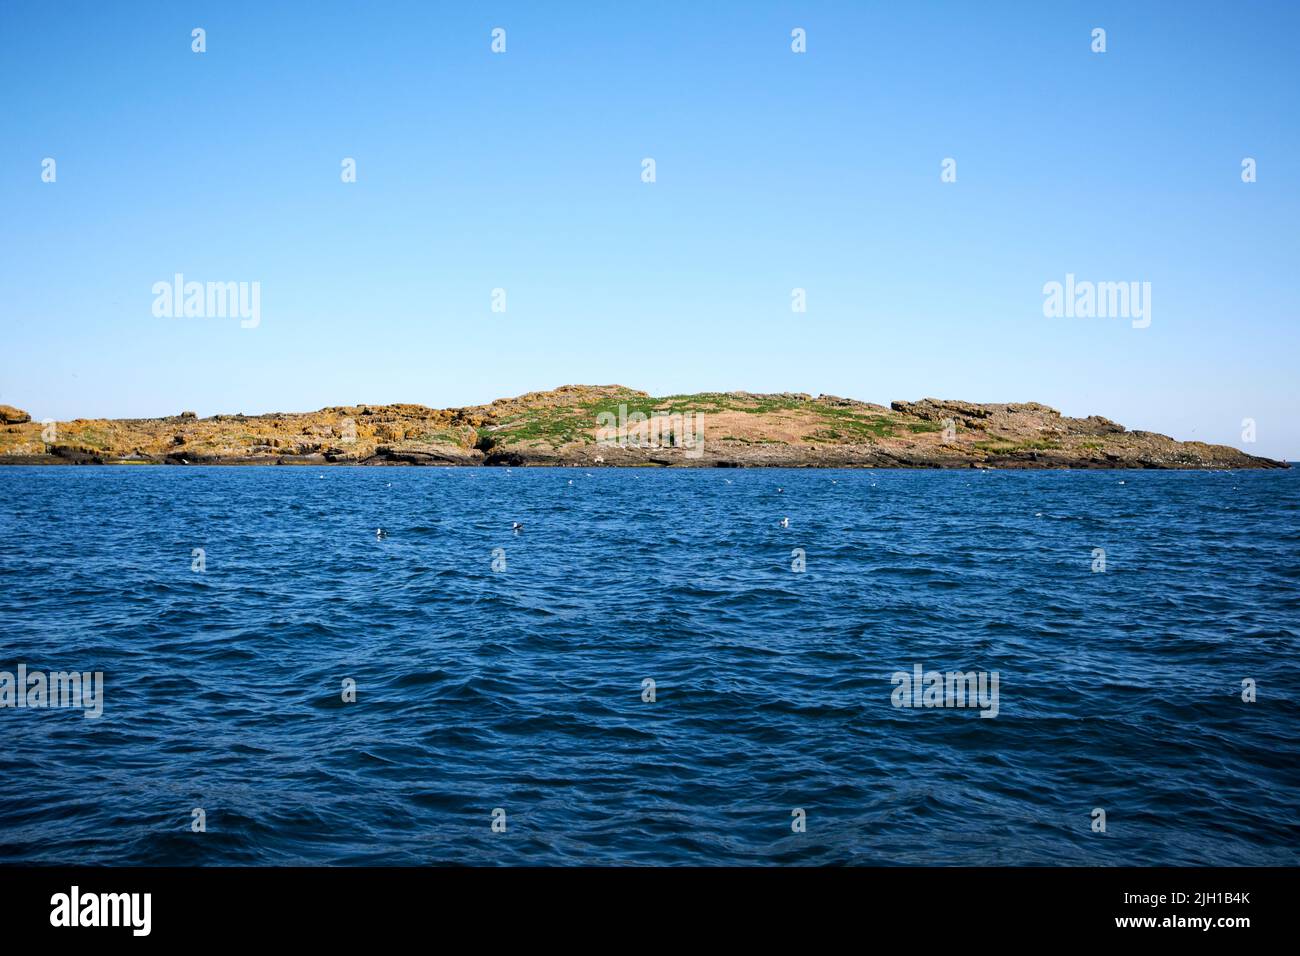 île winkle grande île de skerry en mer au large des îles de skerries côte nord de l'irlande le matin de l'été Banque D'Images